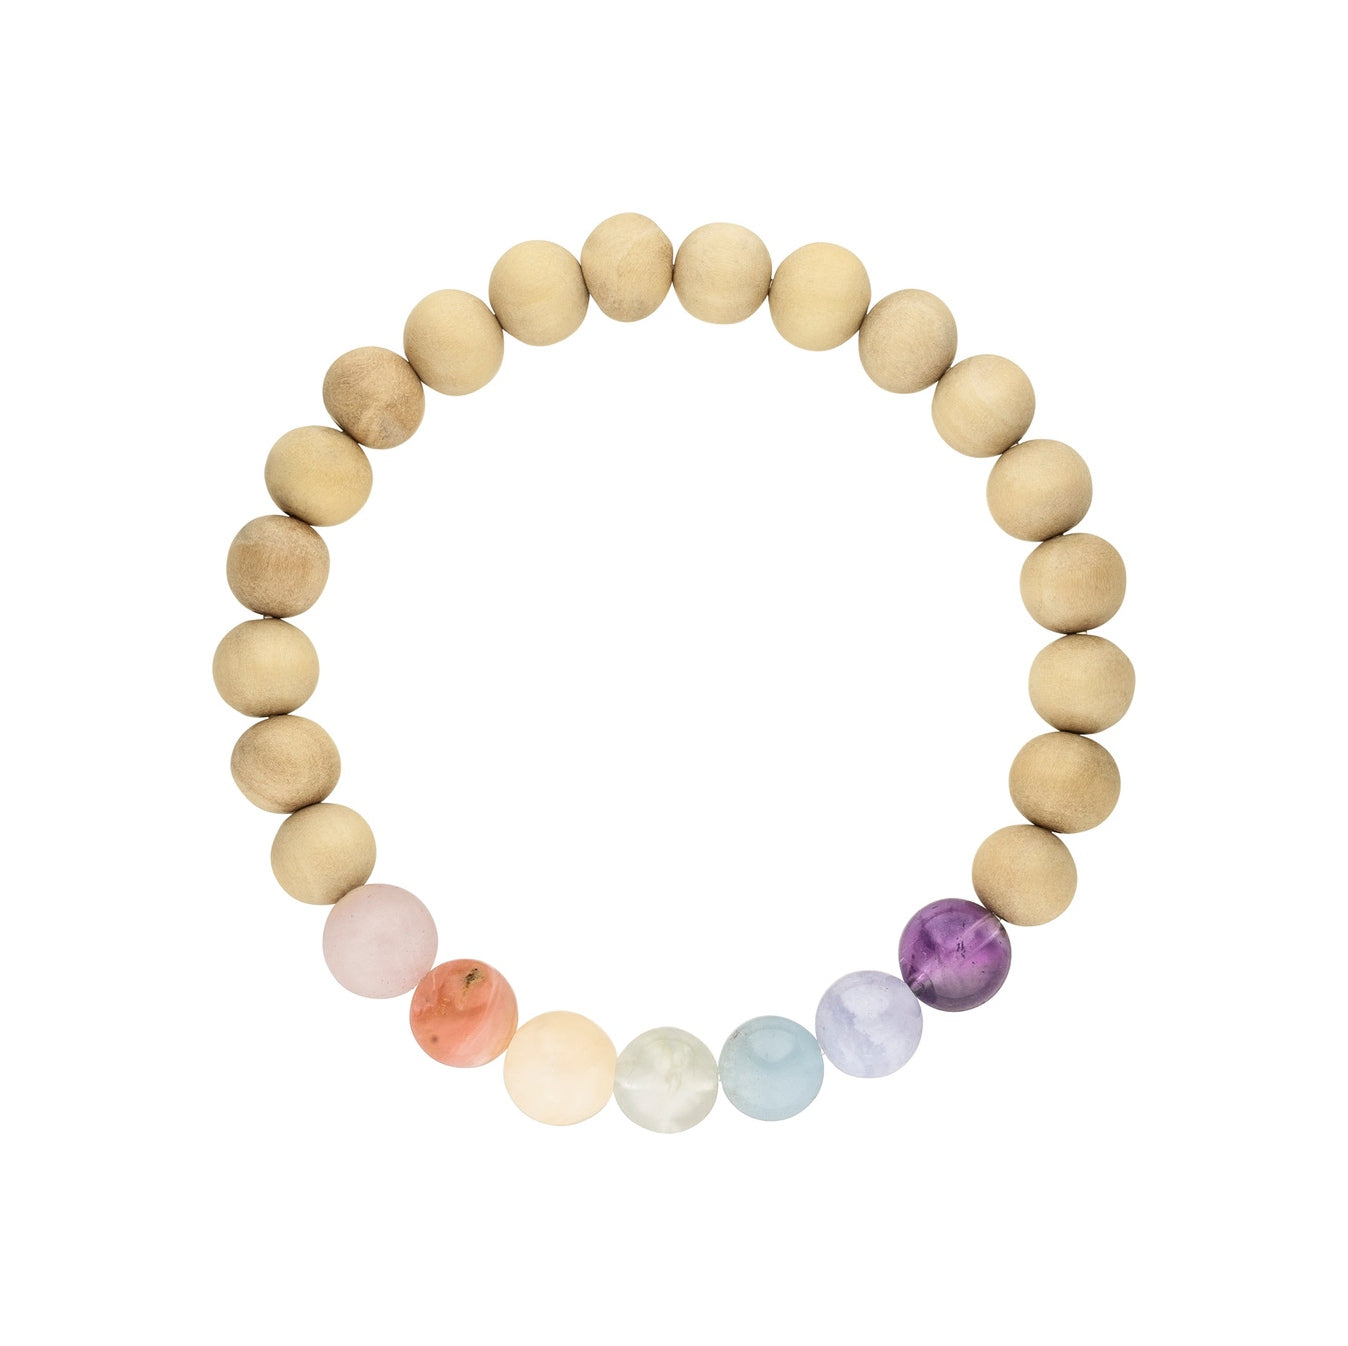 Chakra Armband aus Sandelholz Perlen und sieben Edelsteinen in Pastellfarben.